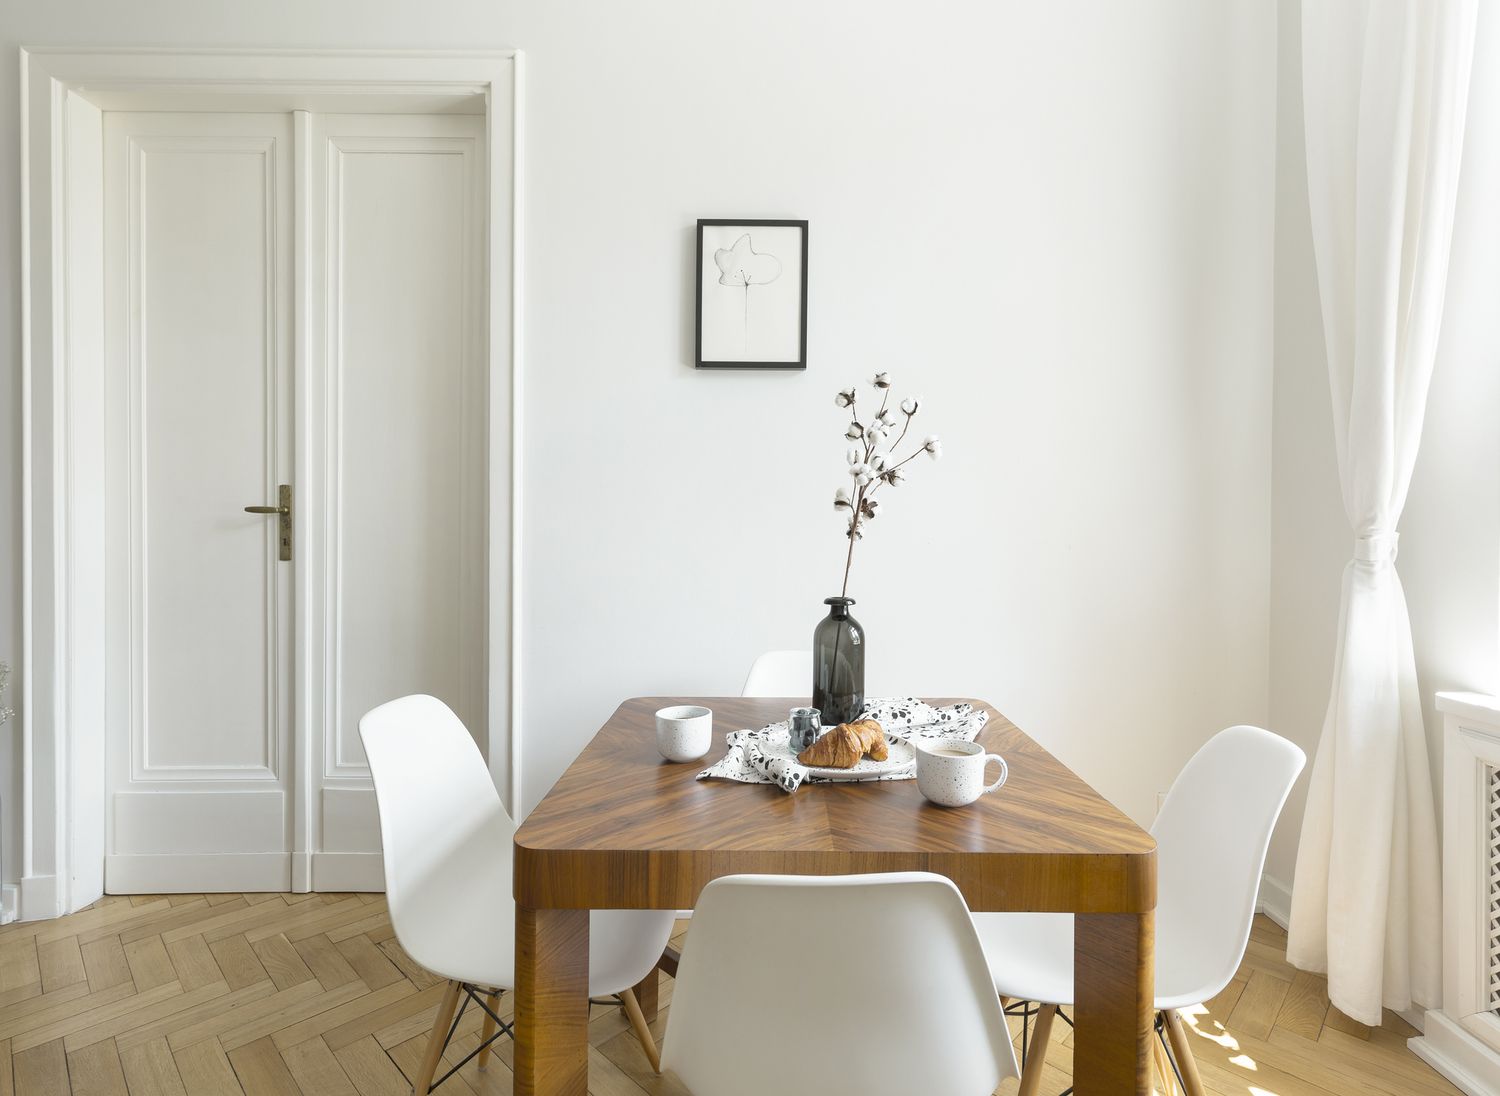 Cadeiras brancas em uma mesa de madeira no interior de uma sala de jantar minimalista com porta e pôster.